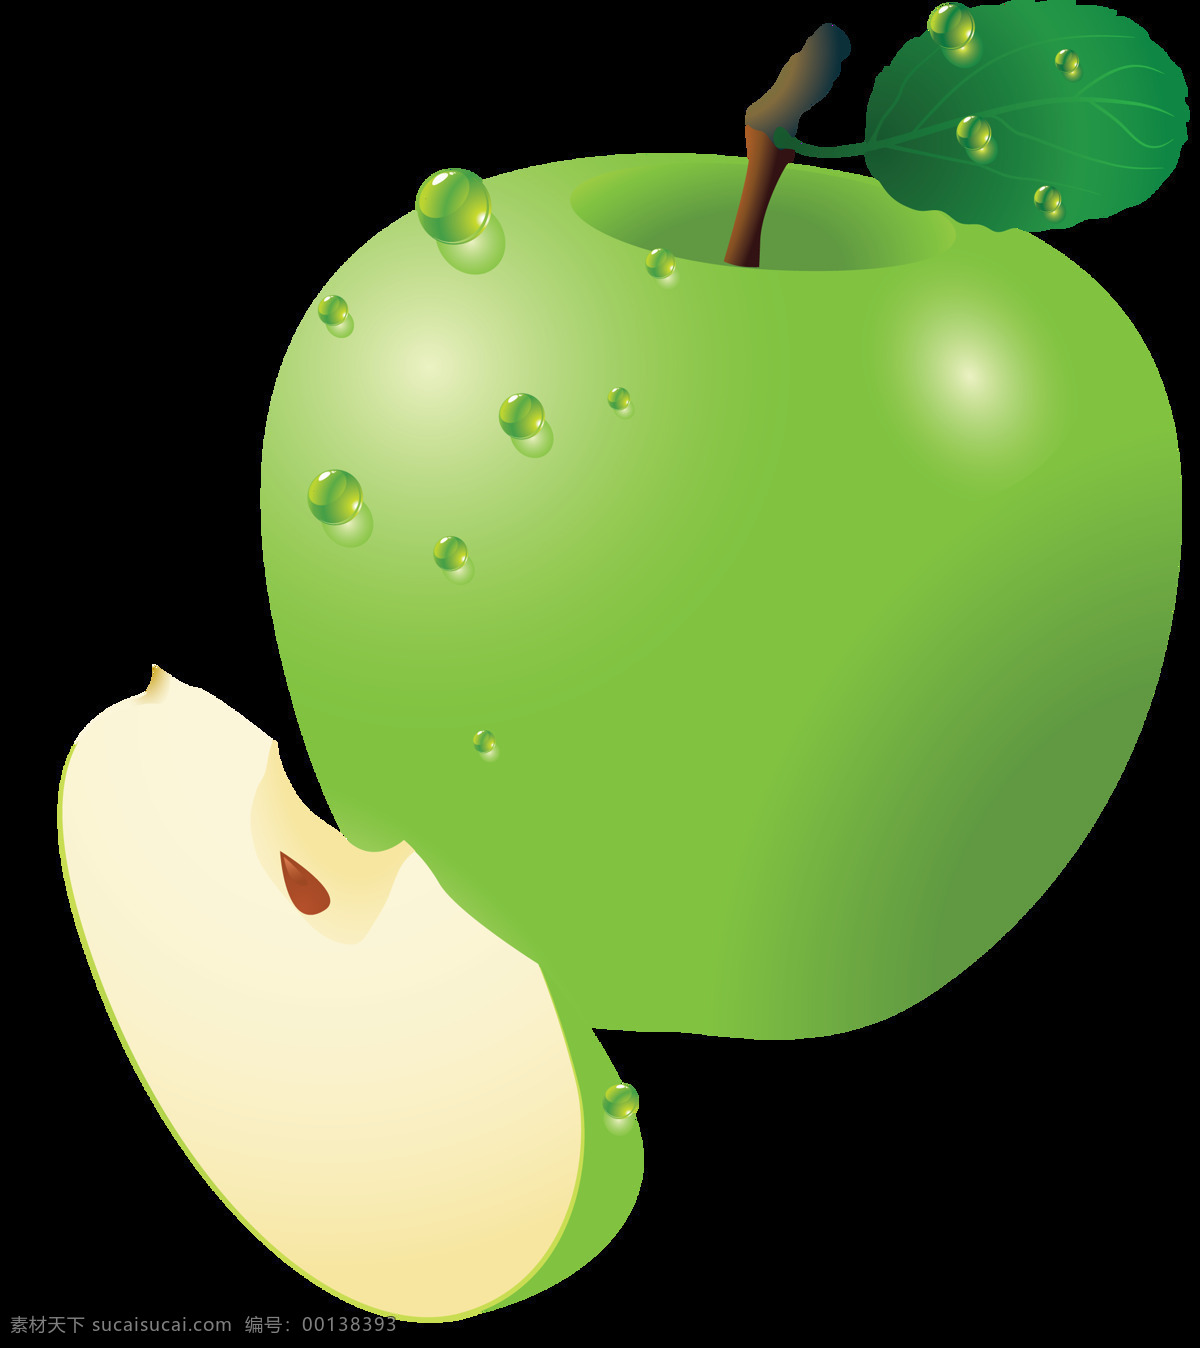 apple 创意水果 高清 美味 苹果 苹果设计素材 青苹果 生物世界 苹果模板下载 水晶苹果 叶子 水果静物 水果 营养 新鲜 新鲜水果 特写 psd源文件